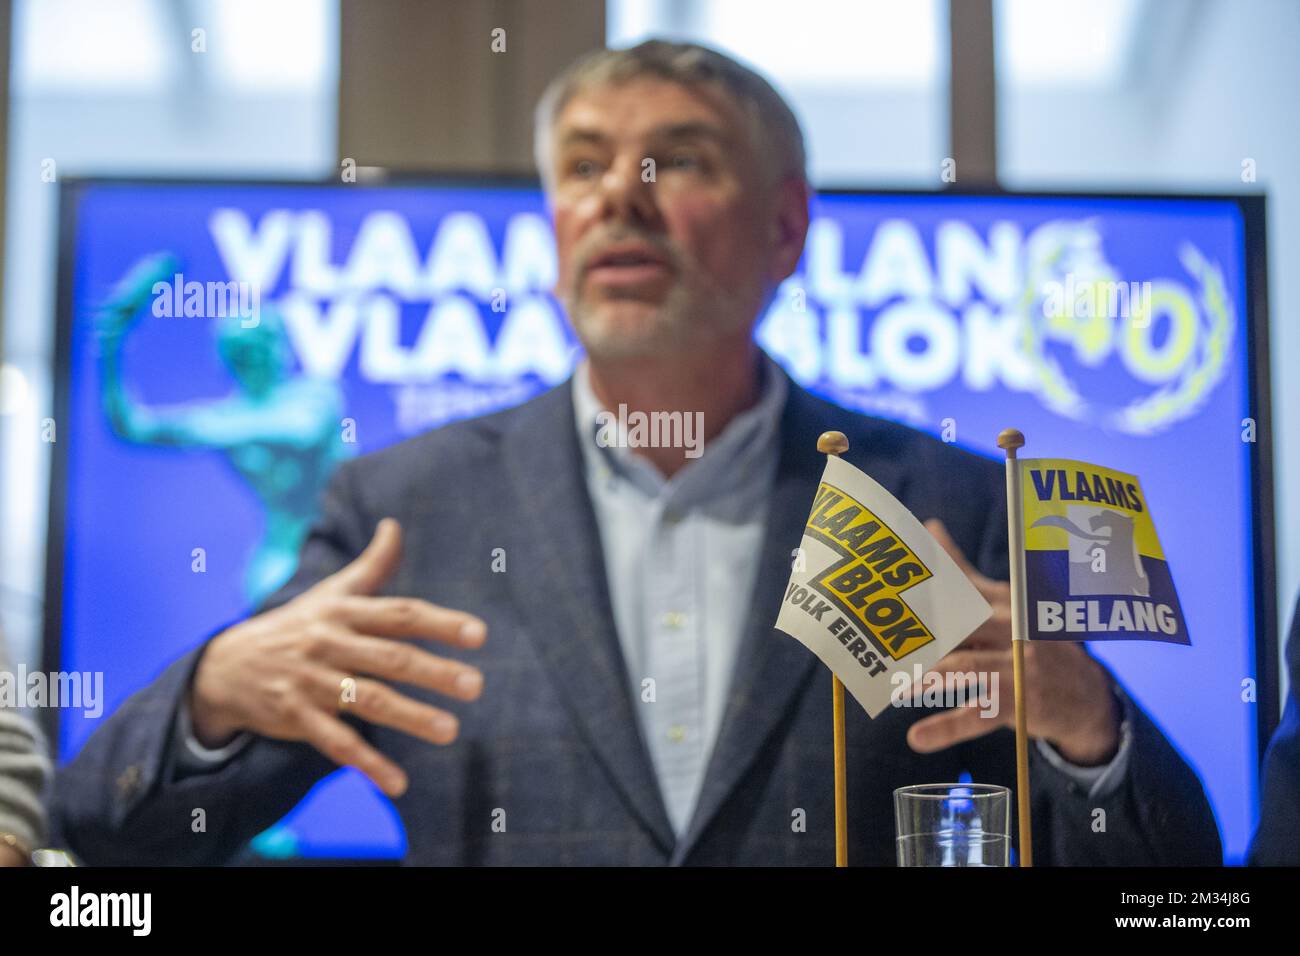 Filip Dewinter de Vlaams Belang photographié lors d'un moment de presse concernant le quarantième anniversaire de la partie d'extrême droite flamande Vlaams Belang, qui a débuté avec le nom Vlaams Blok, jeudi 04 mars 2021 à Anvers. BELGA PHOTO NICOLAS MATERLINCK Banque D'Images